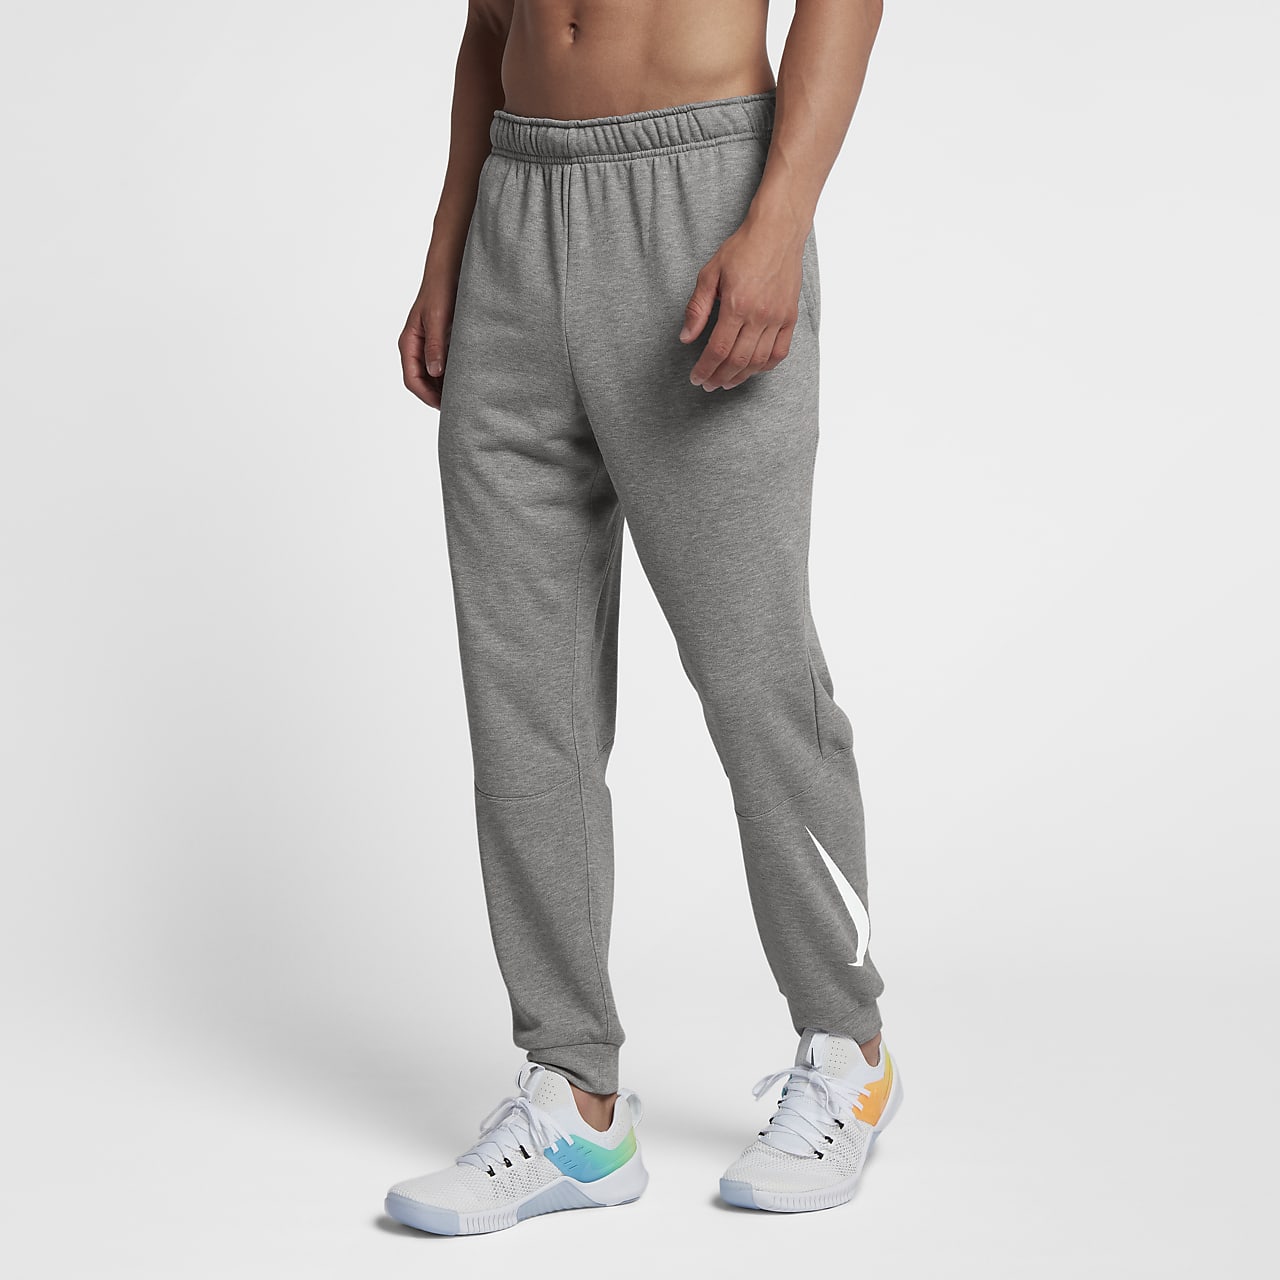 Nike Dri-FIT Tapered 男子针织训练长裤